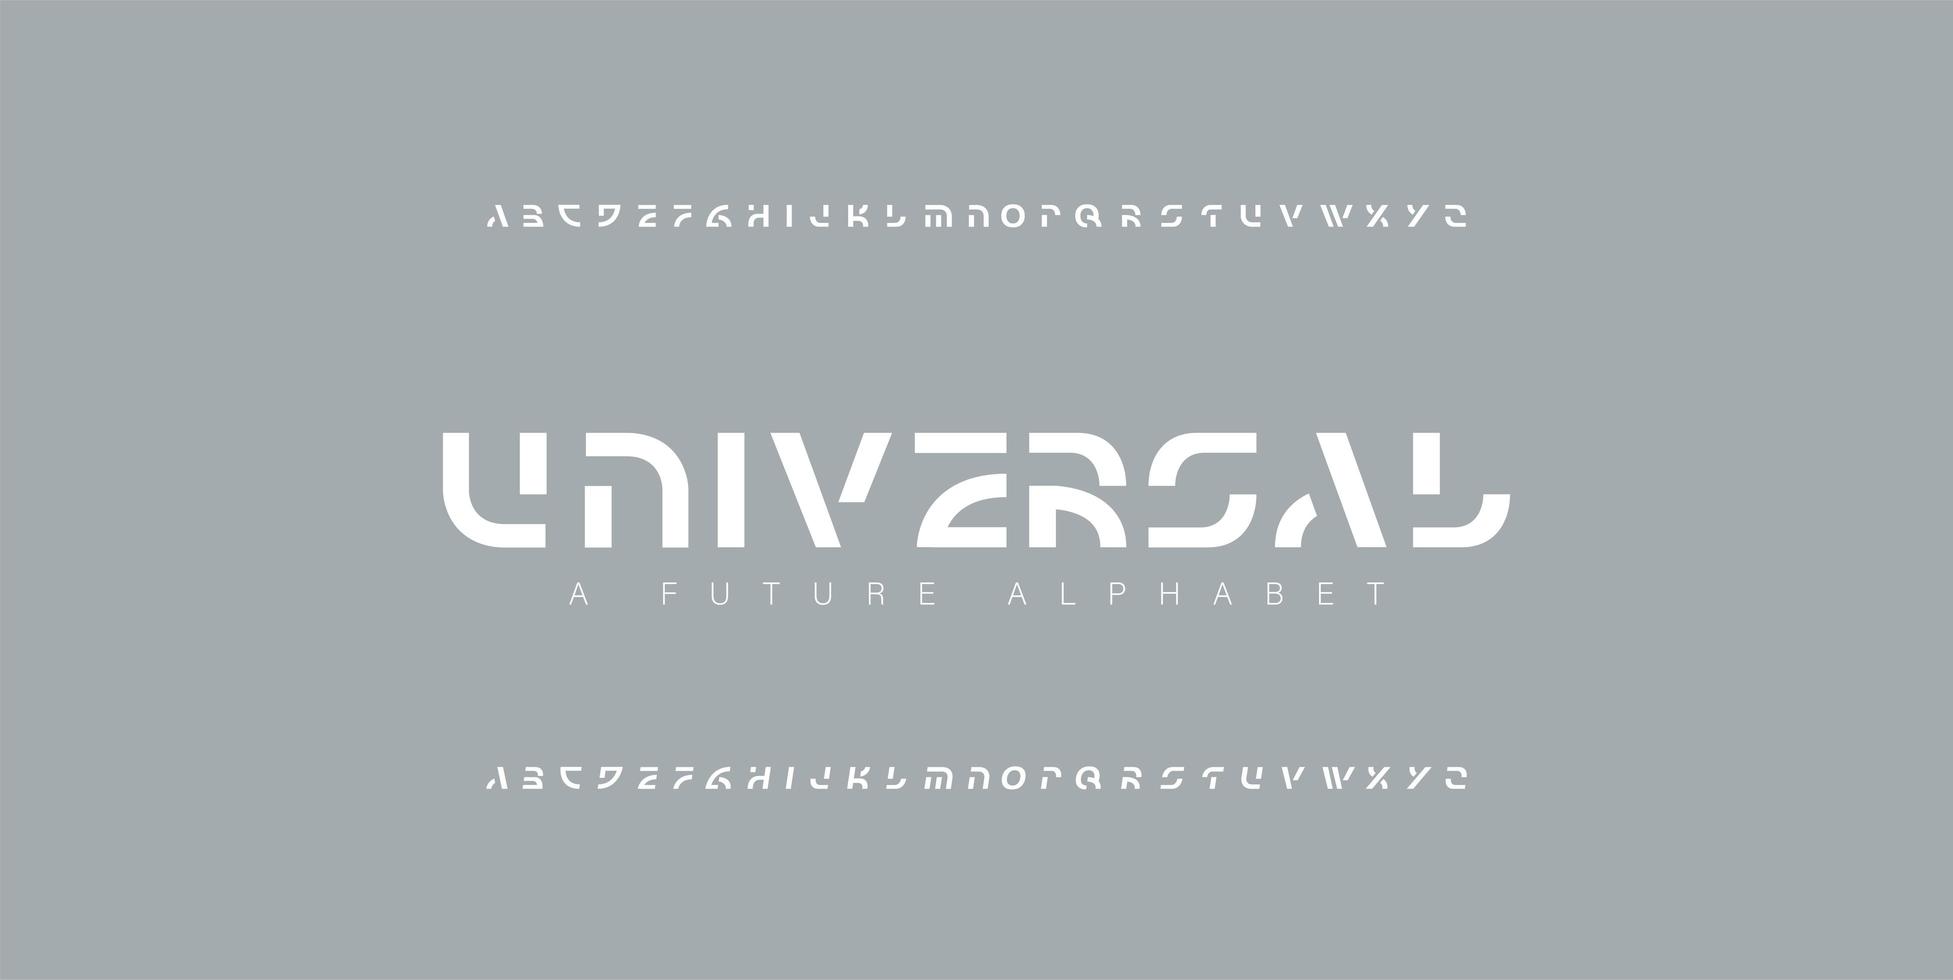 abstracte moderne alfabet lettertypen instellen vector